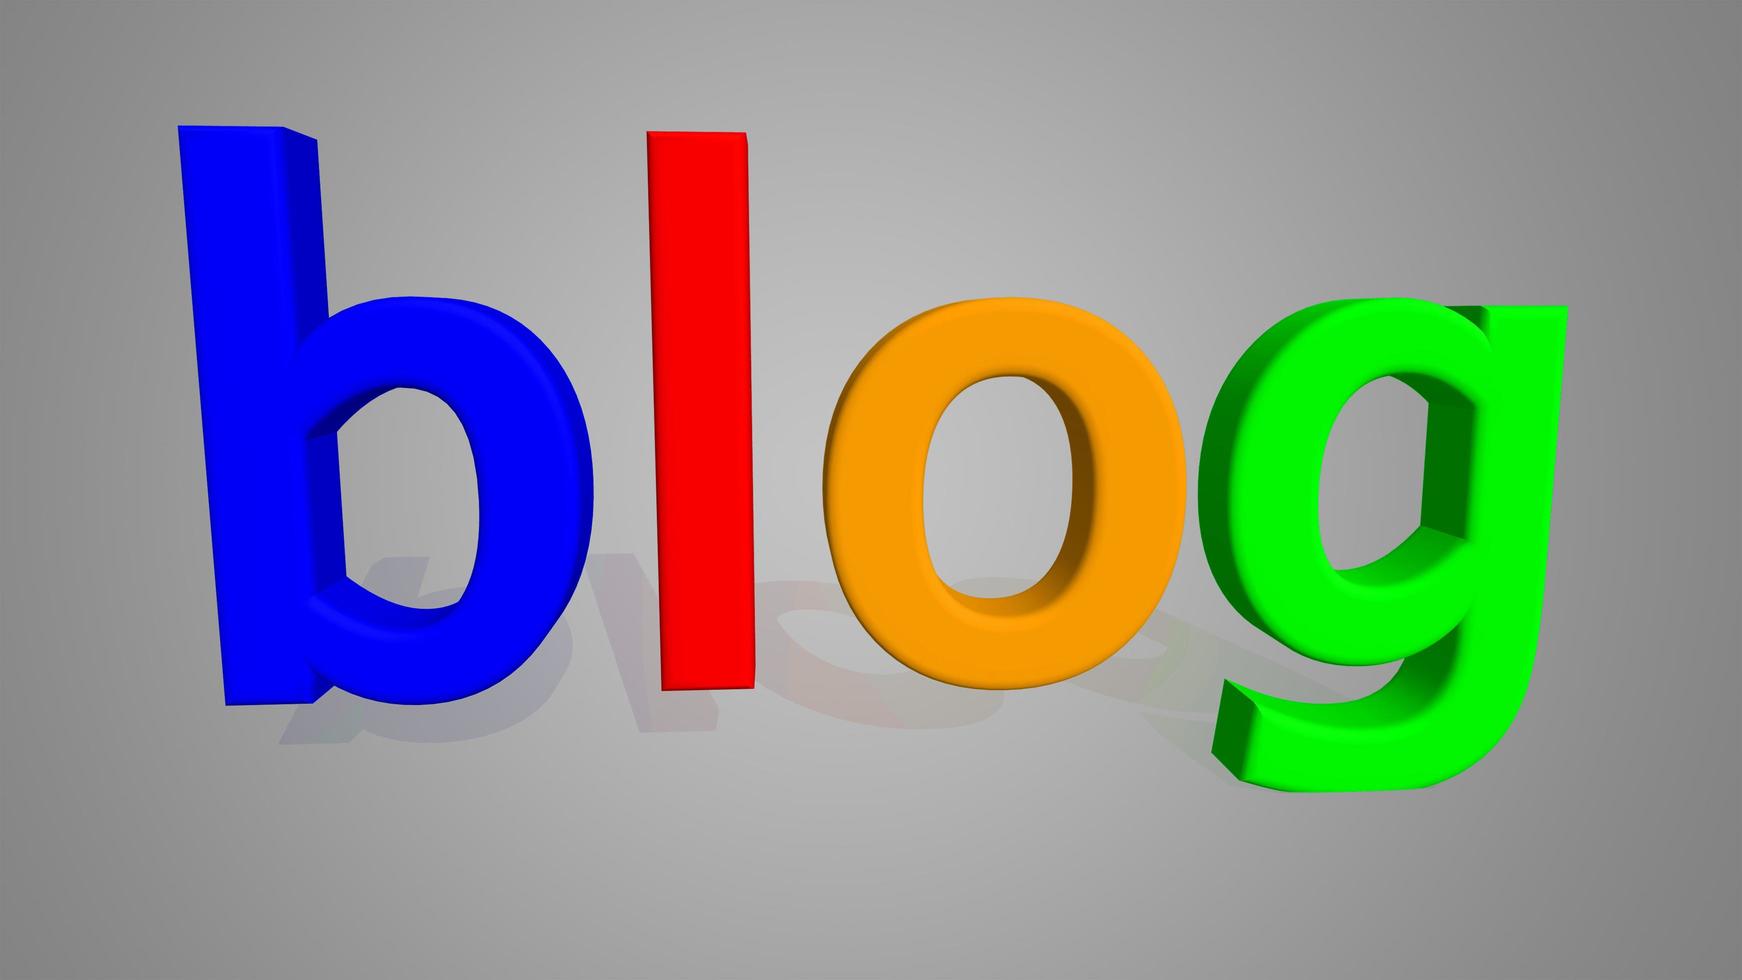 le mot blog en lettres 3d de bleu rouge orange vert photo